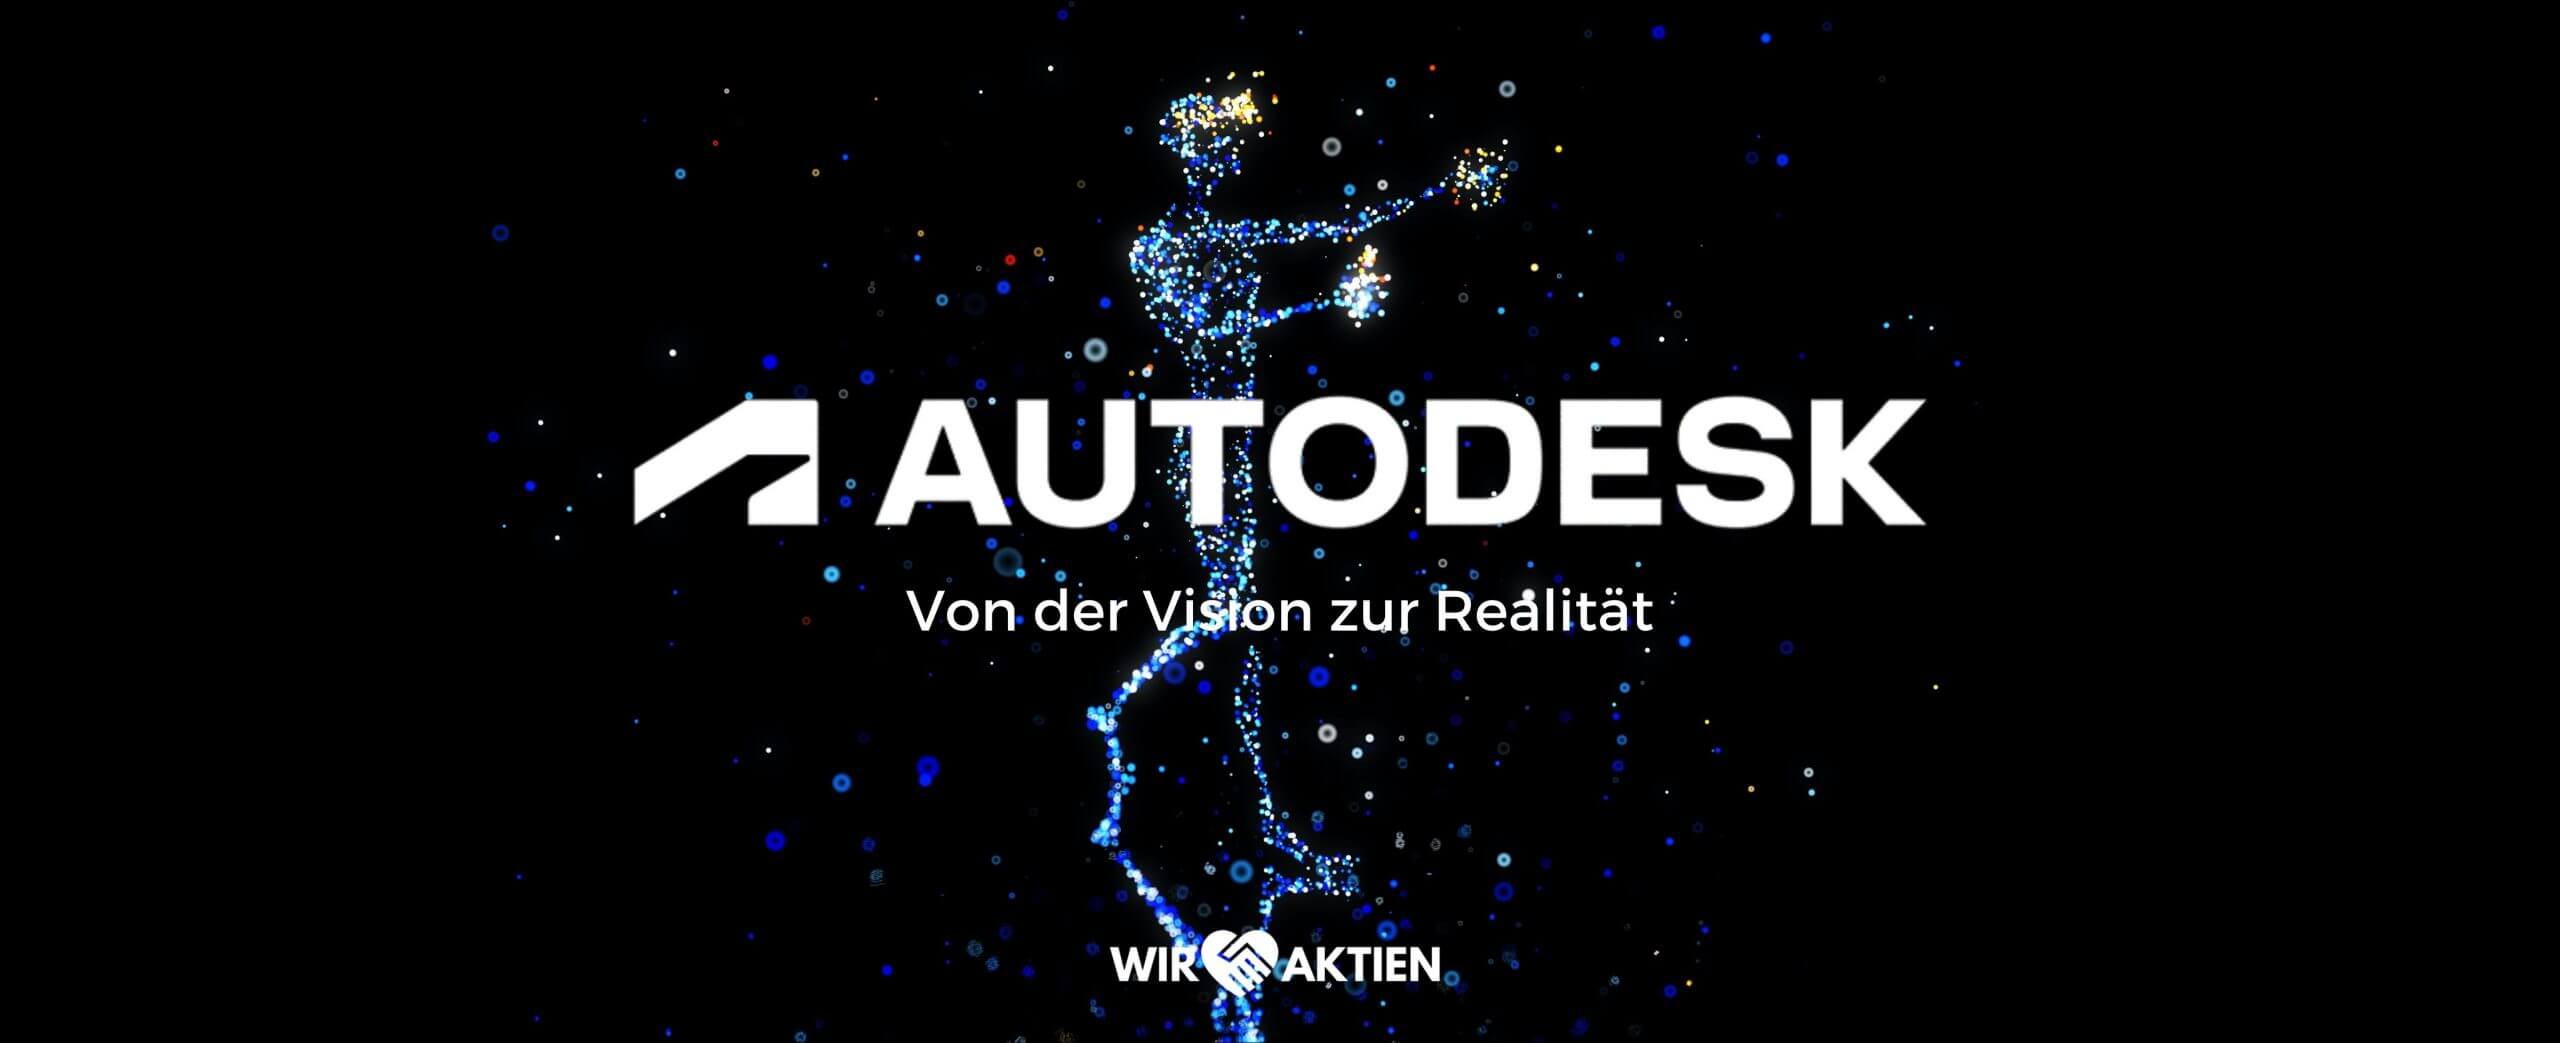 Autodesk Aktie Analyse – Das Bindeglied zwischen Vision und Realität